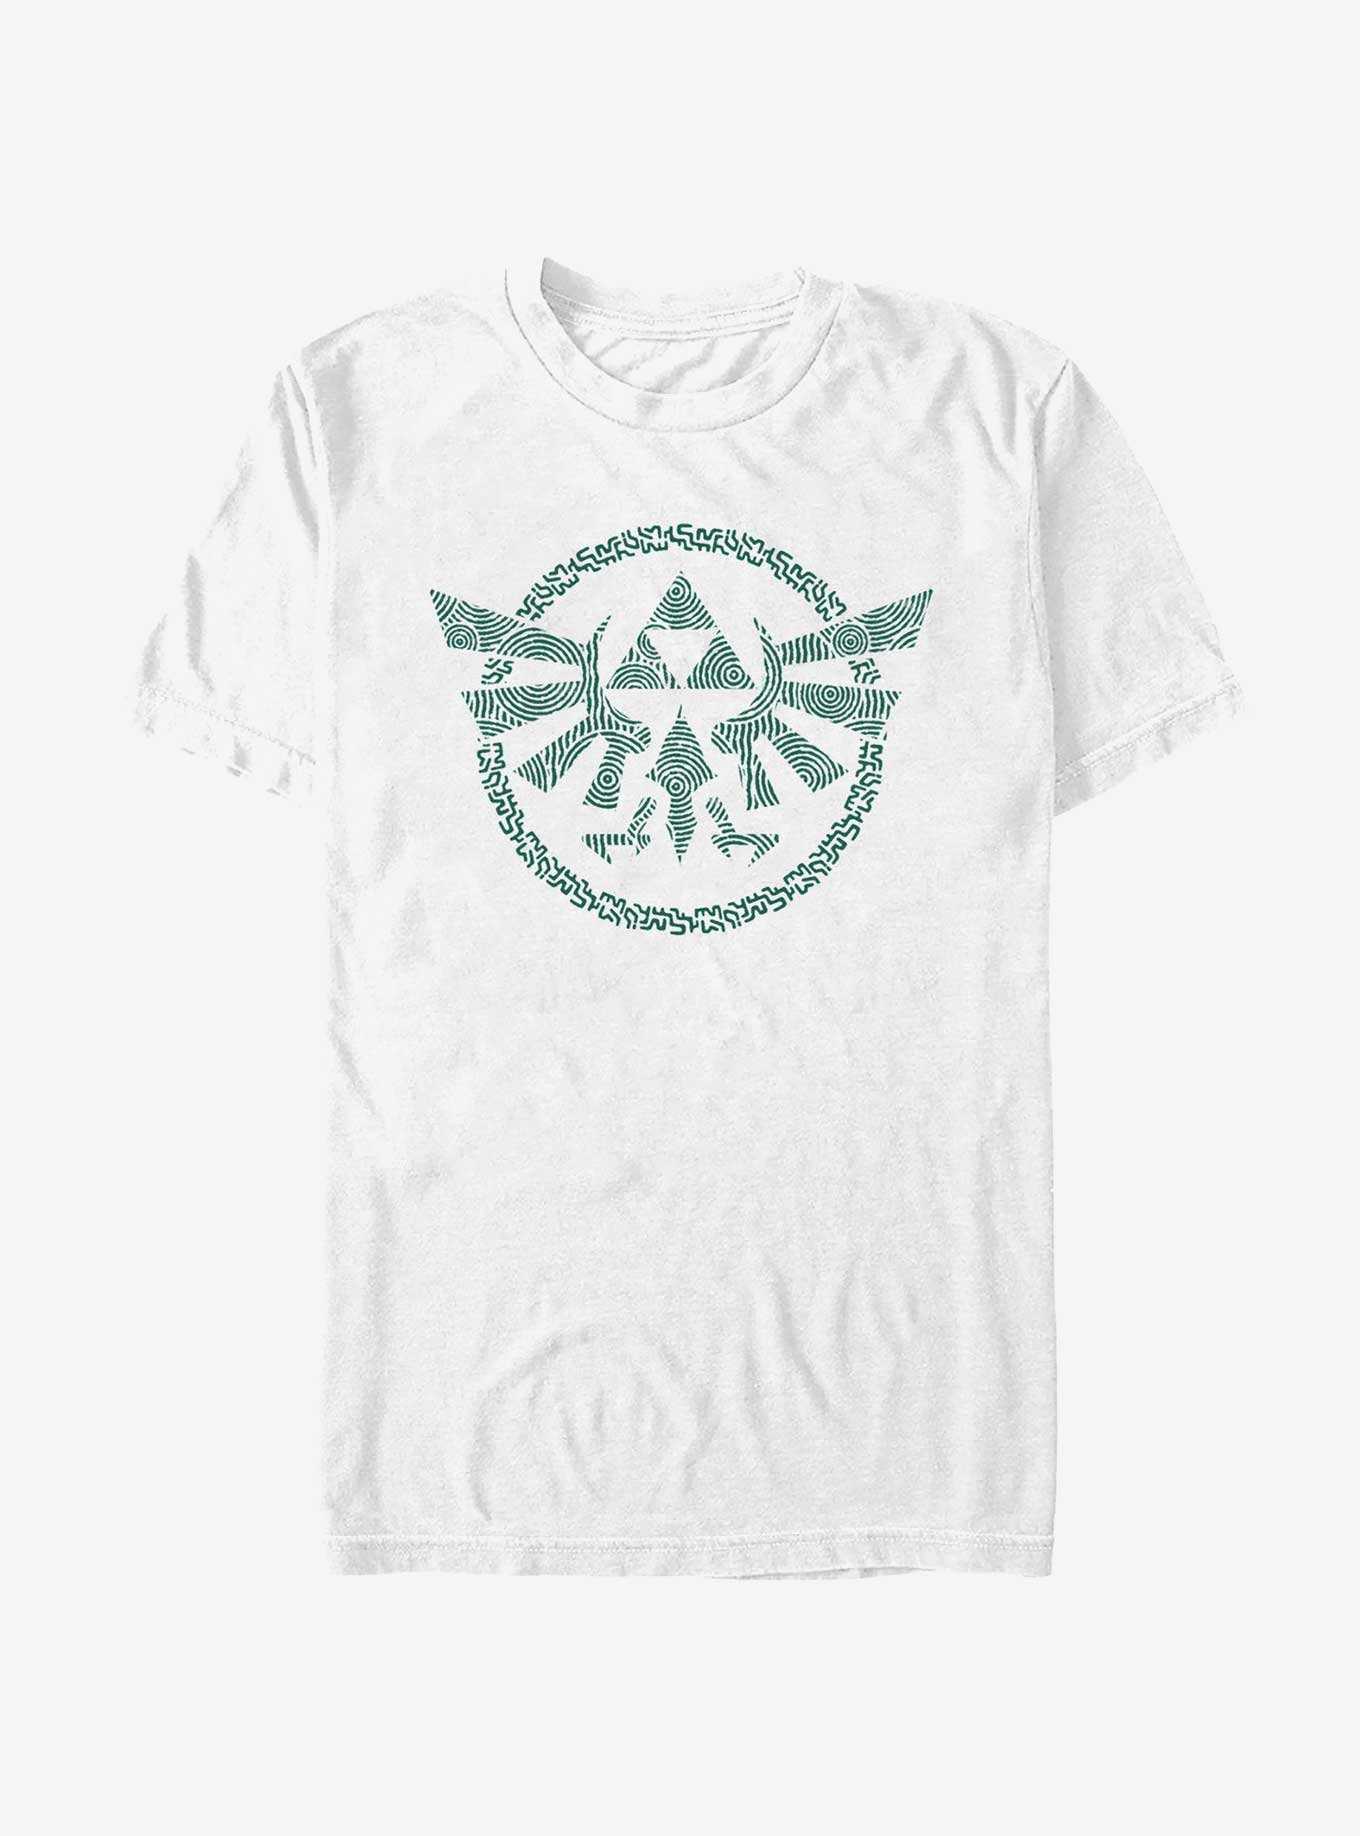 The Legend of Zelda Hyrule Crest T-Shirt, , hi-res